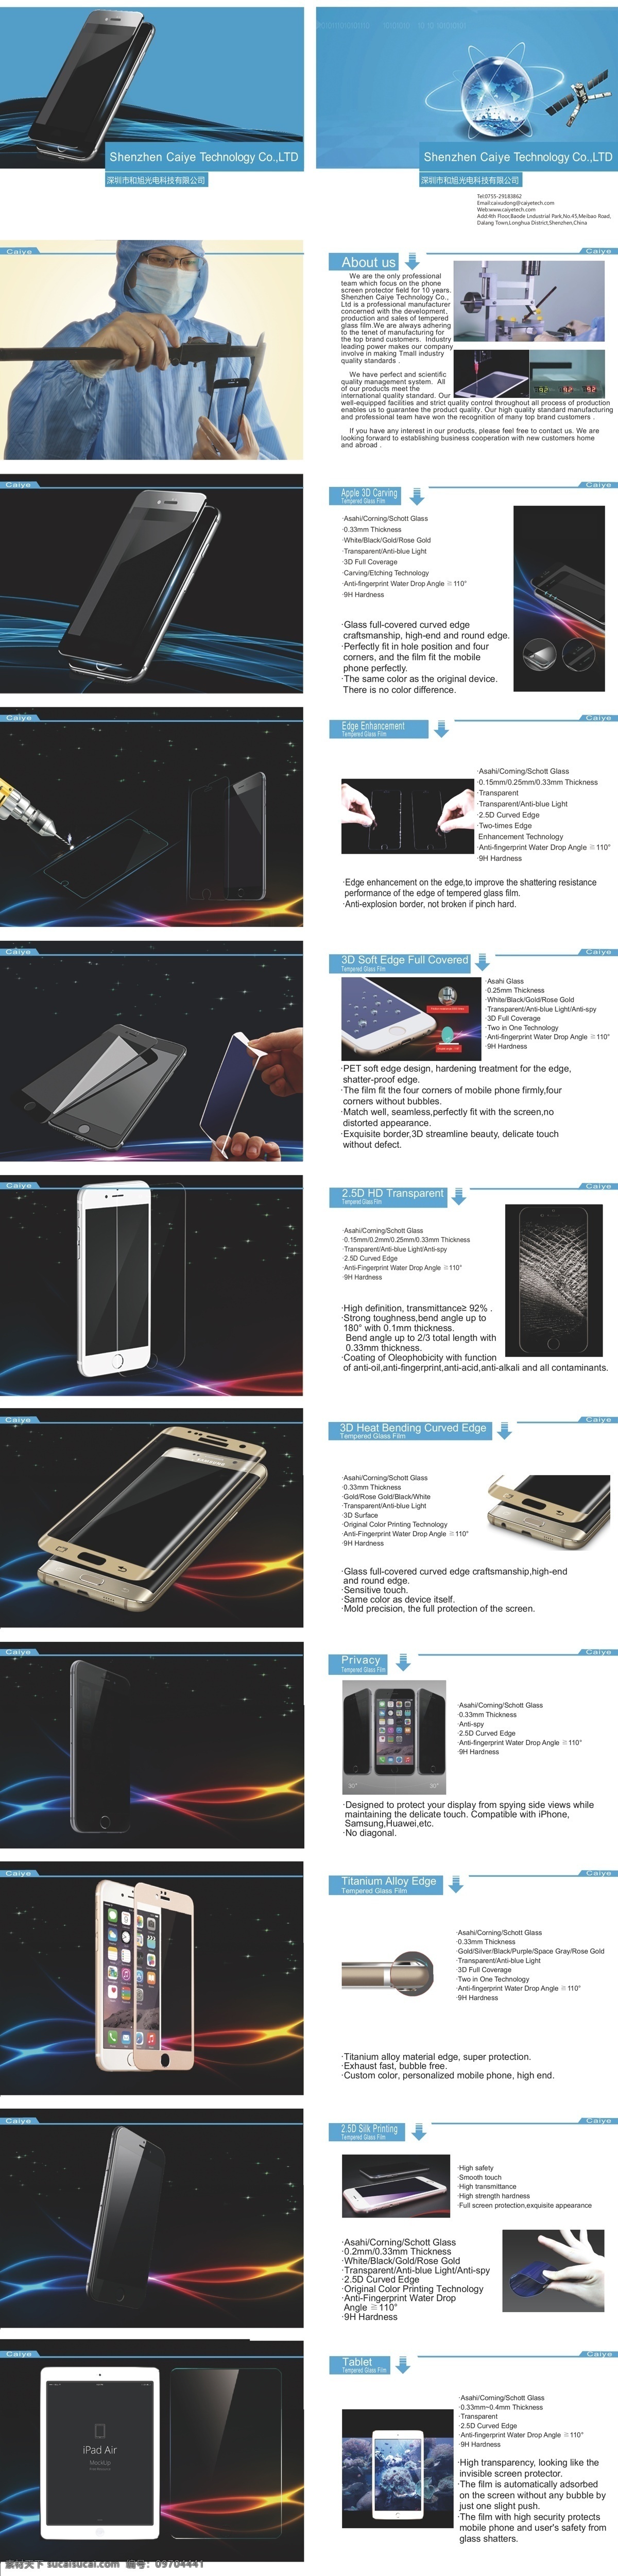 手机 钢化玻璃 膜 公司 宣传手册 手机钢化膜 钢化玻璃膜 画册 宣传册 钢化 公司手册